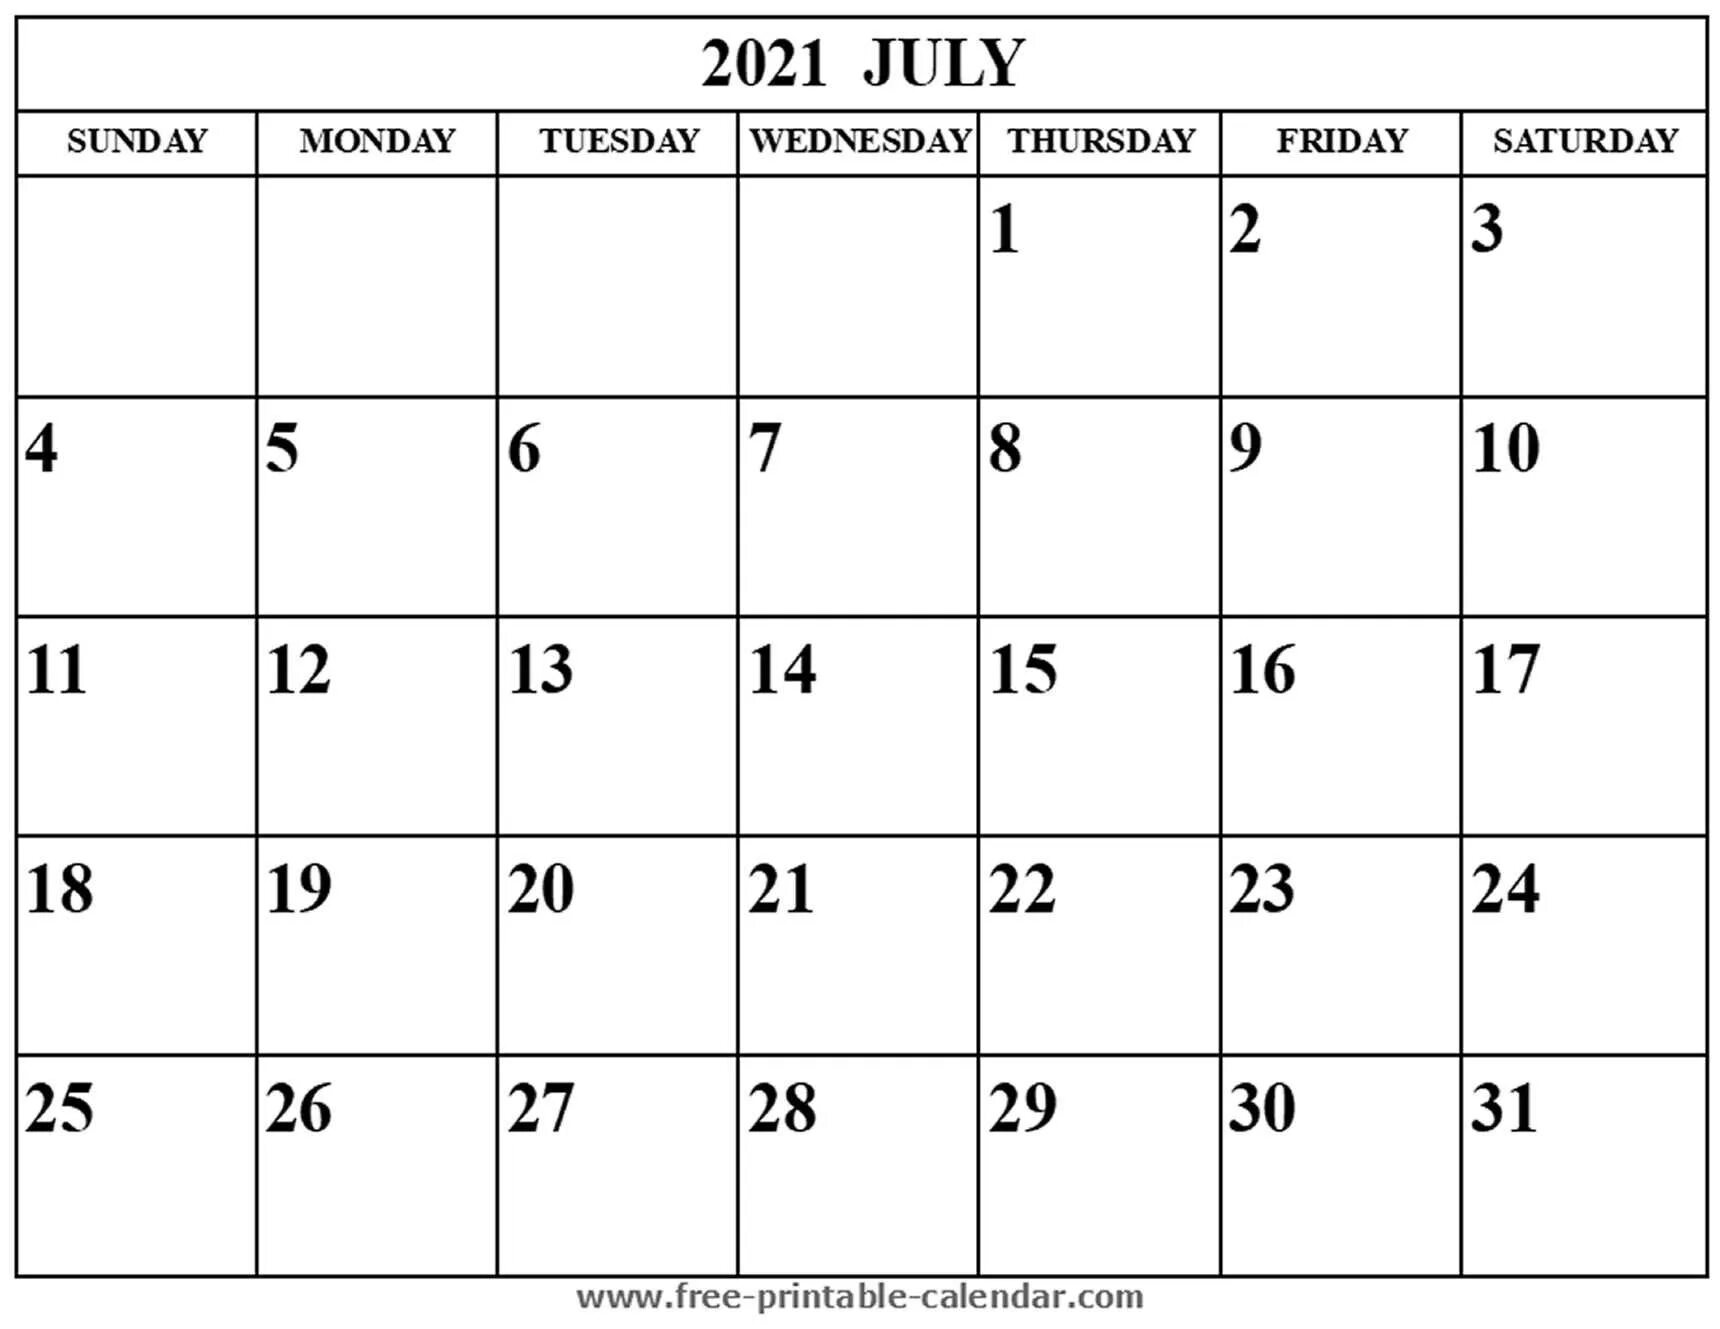 Календарь март 2016. Август календарь для заметок. Август 2021 года календарь. Календарь август пустой. Календарь на август для записей.